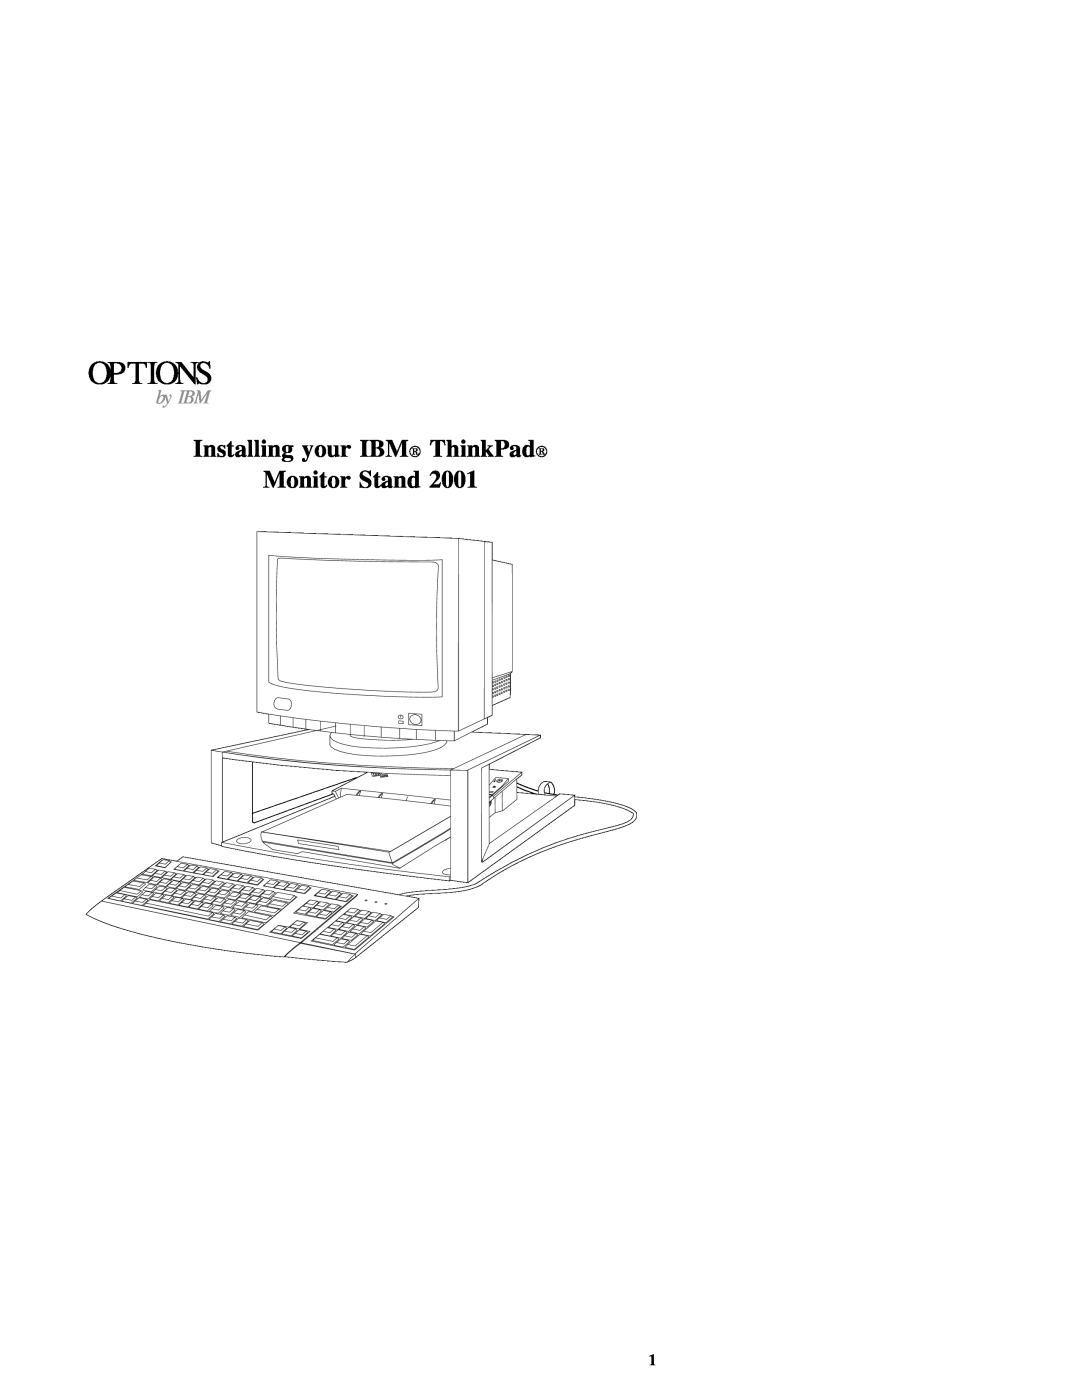 IBM E74 manual Options, Installing your IBM ThinkPad Monitor Stand, by IBM 